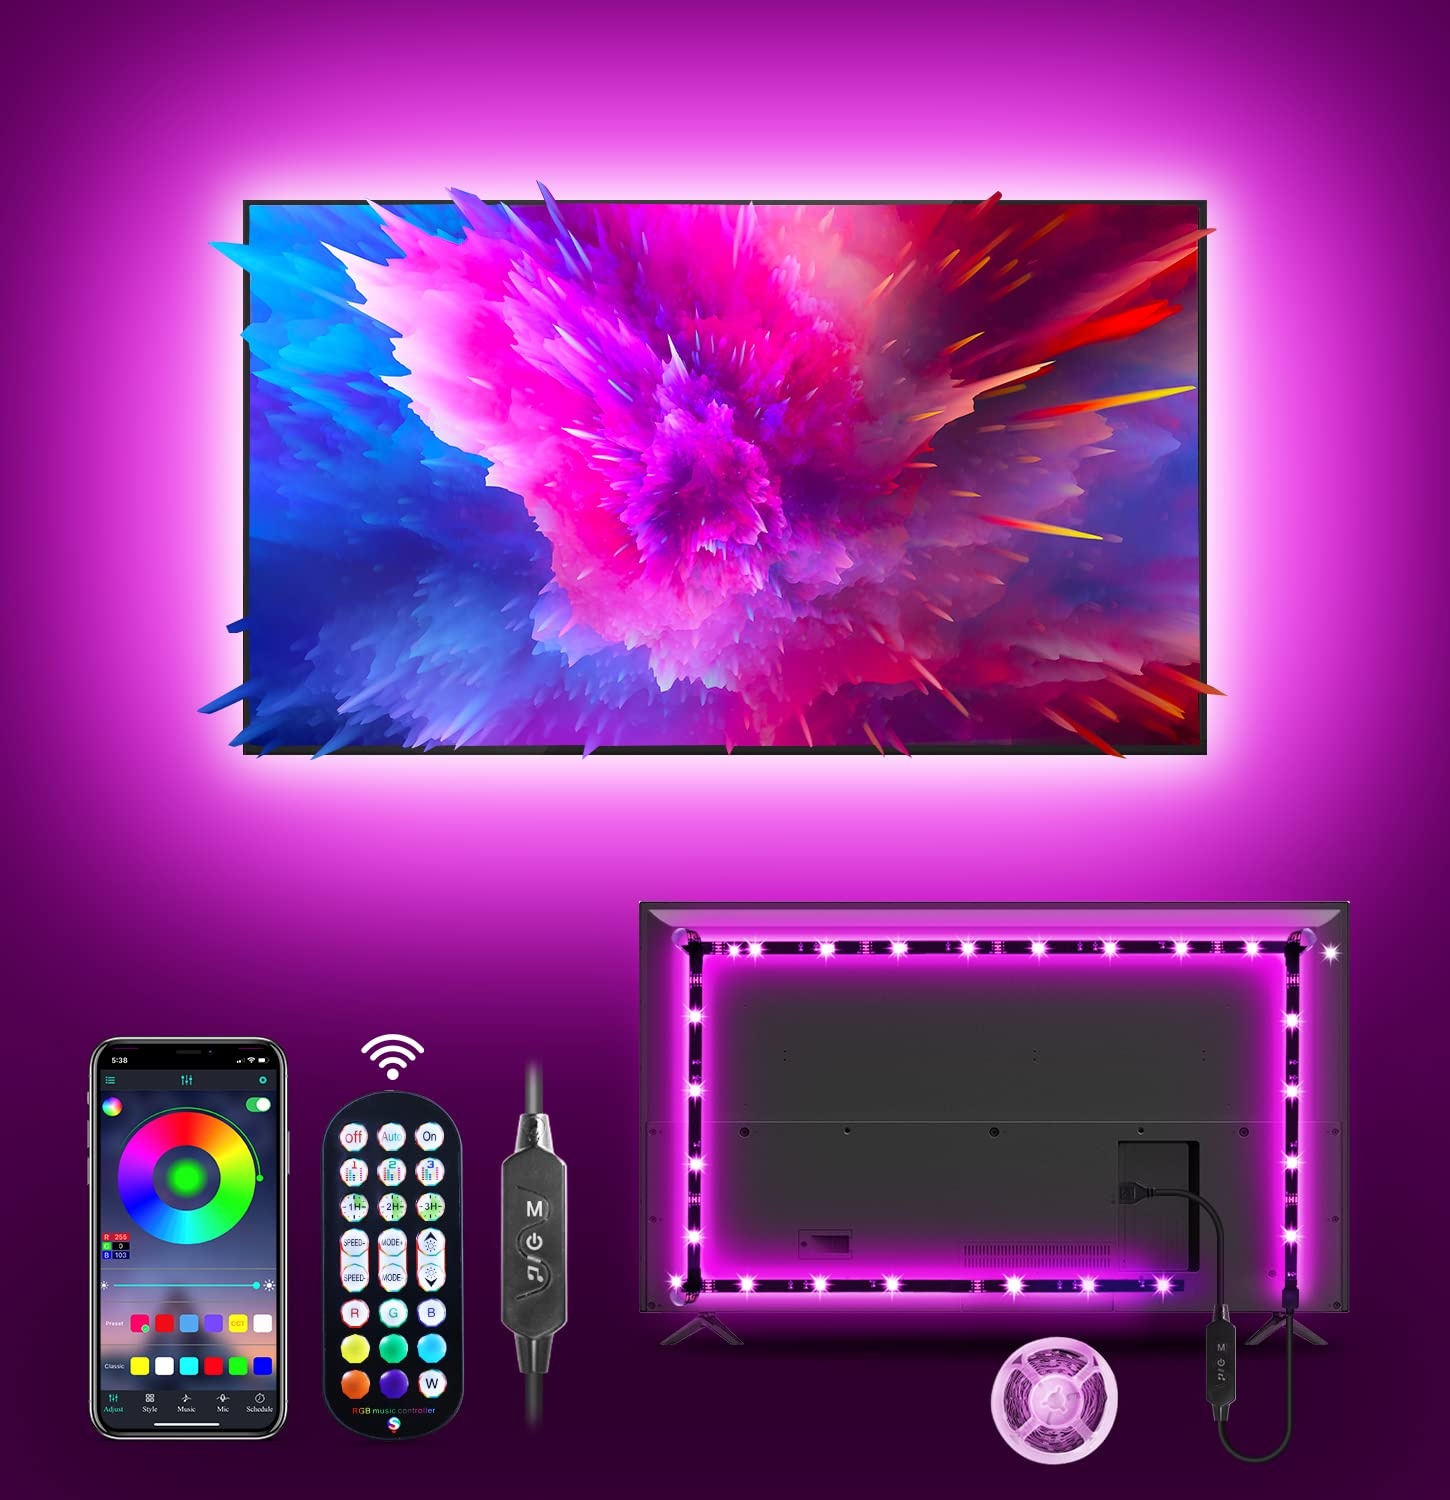 MATICOD TV LED Lichter für TV, 4M RGB LED TV Hintergrundbeleuchtungen TV Lichter, die mit TV synchronisieren, USB LED TV Lichter LED Streifen Lichter mit Bluetooth Smart App Fernbedienung